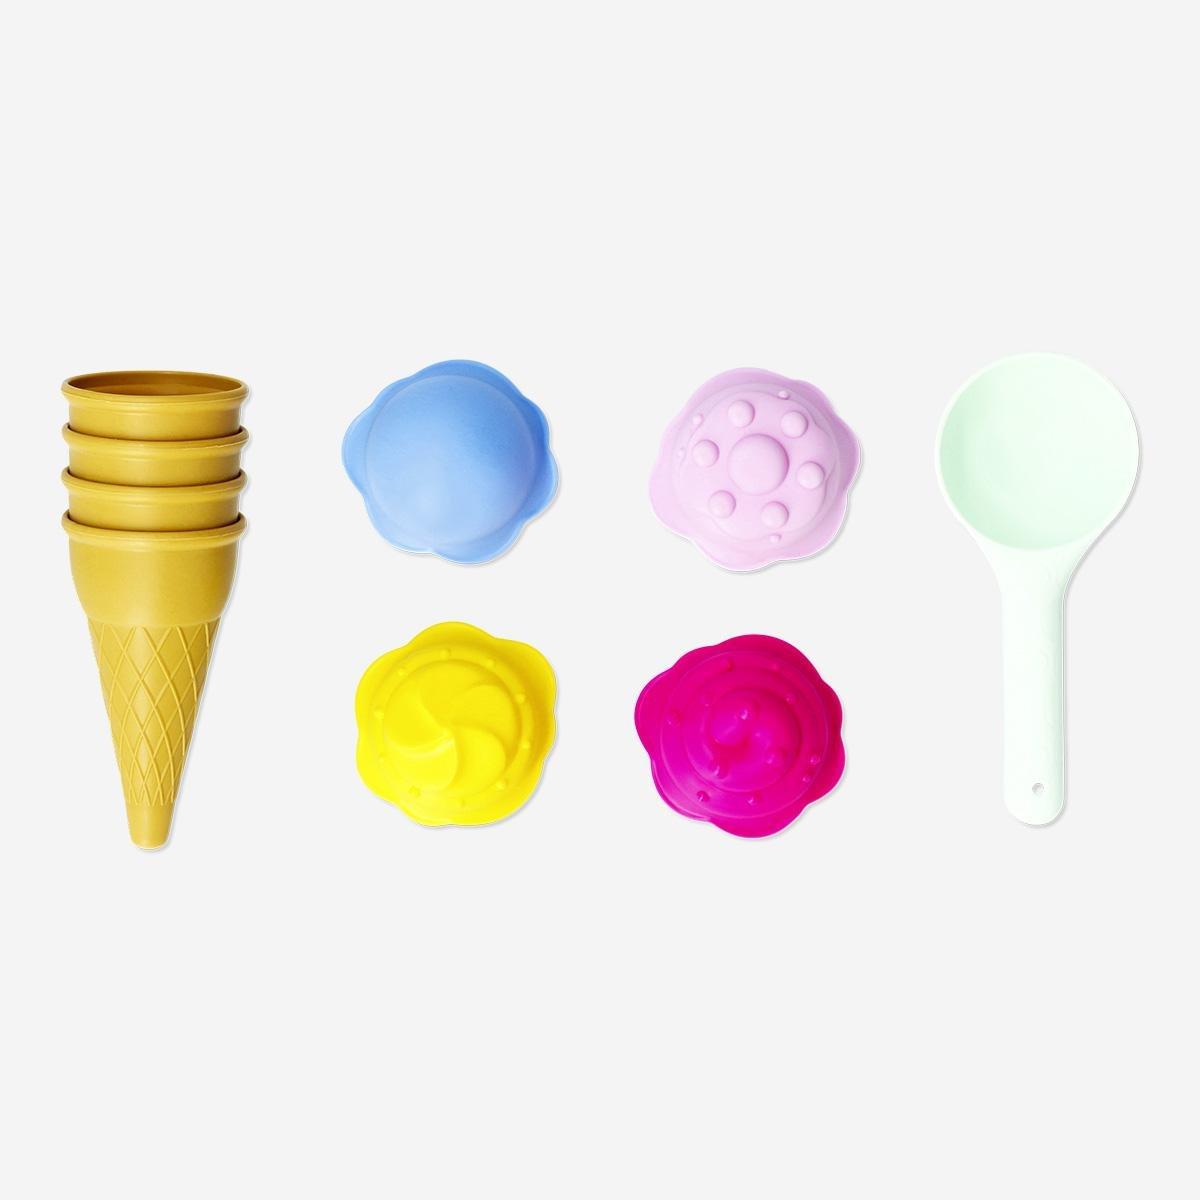 Multicolour ice cream sand moulds. 9 pcs